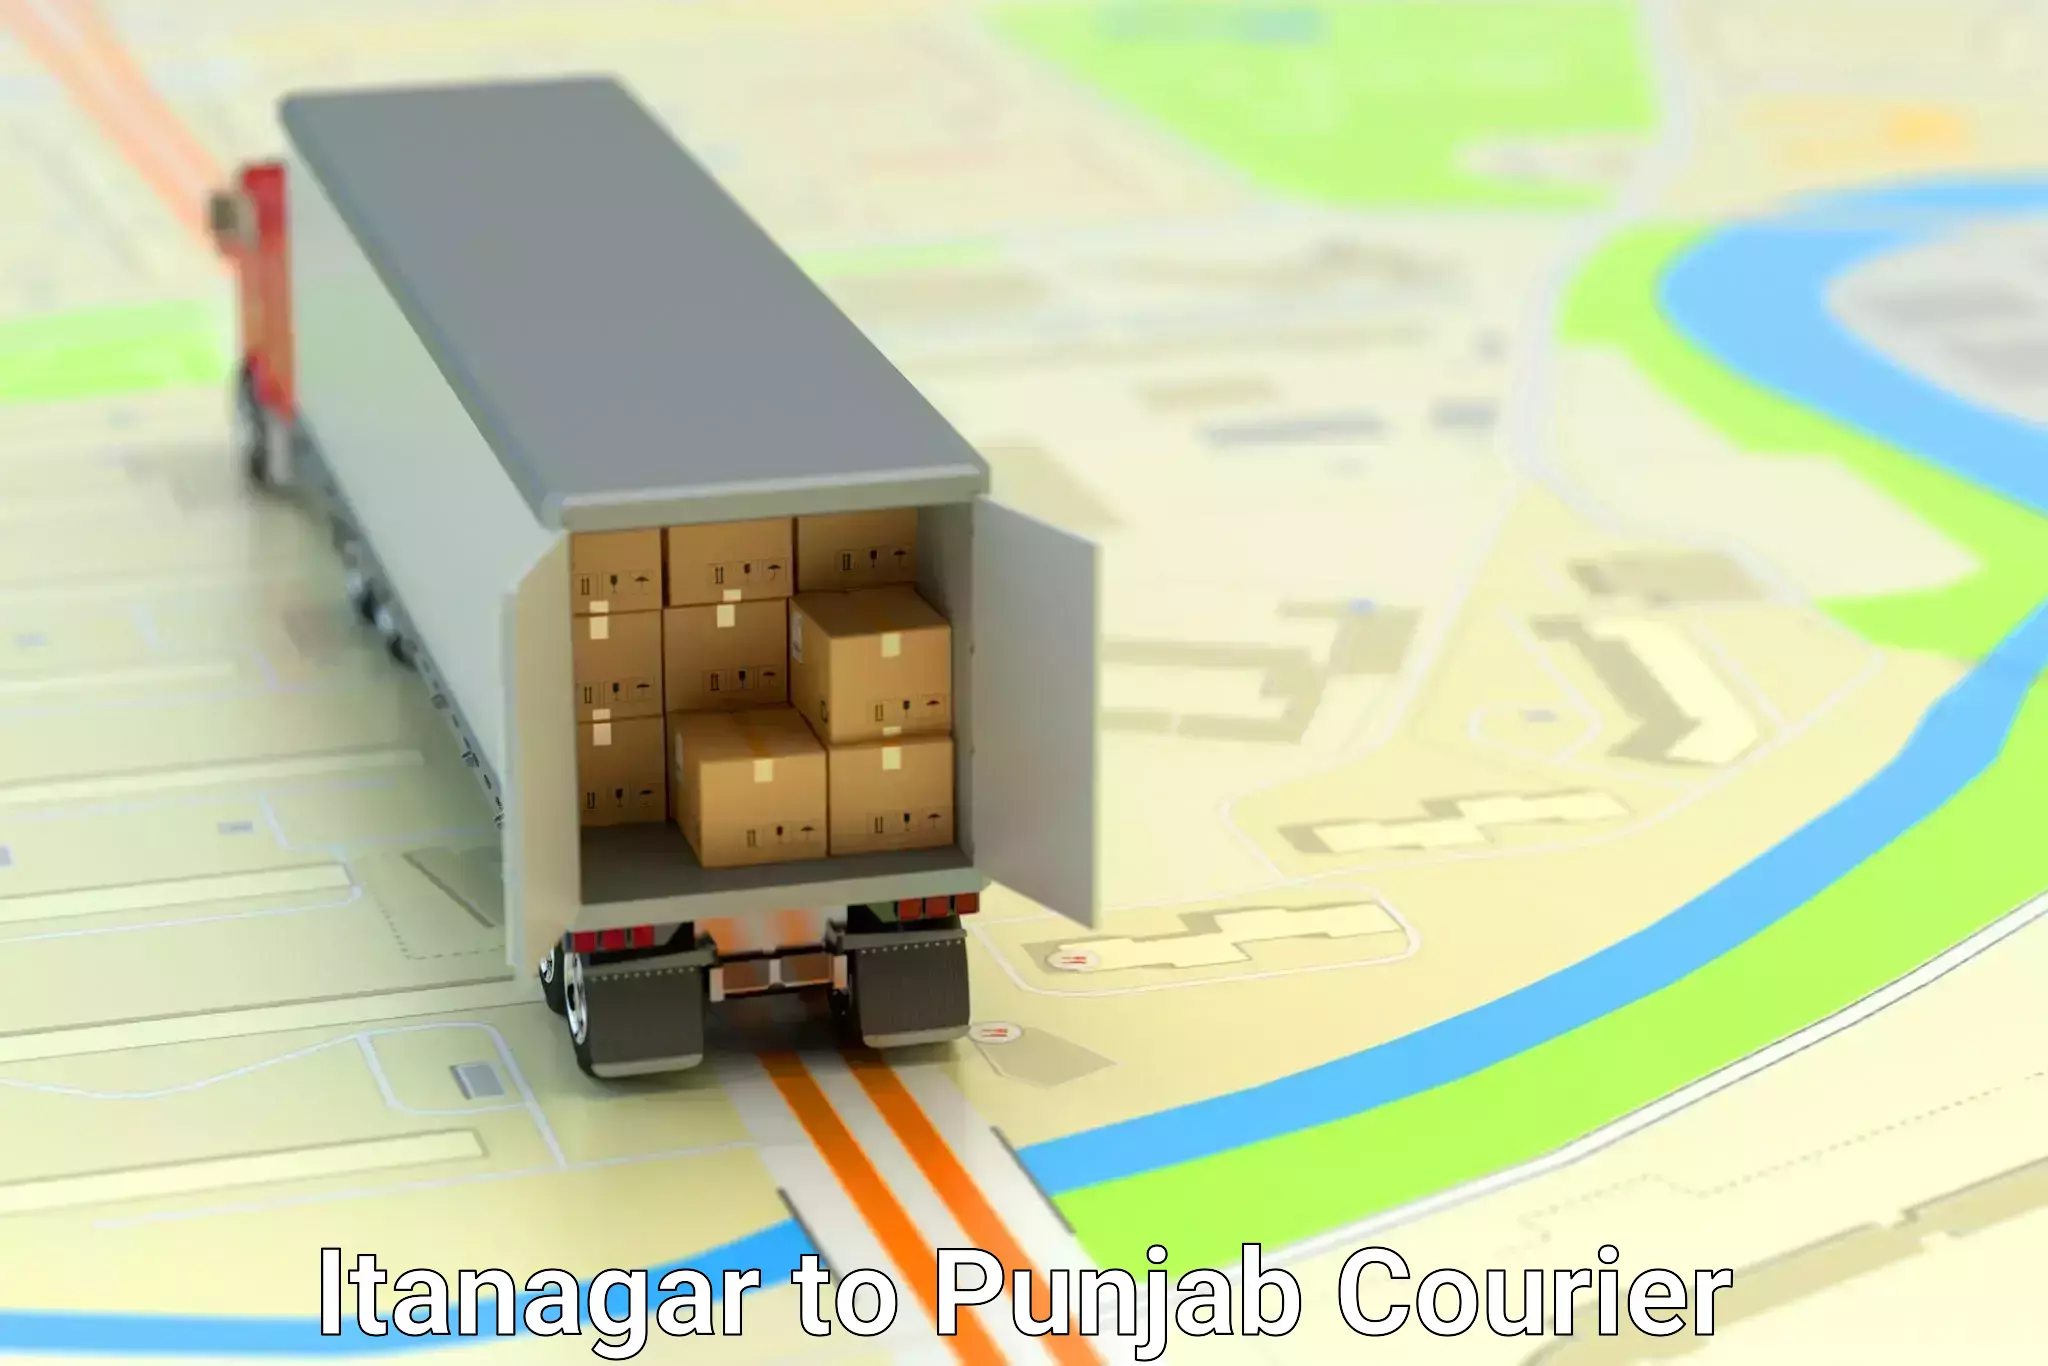 Door-to-door shipment Itanagar to Punjab